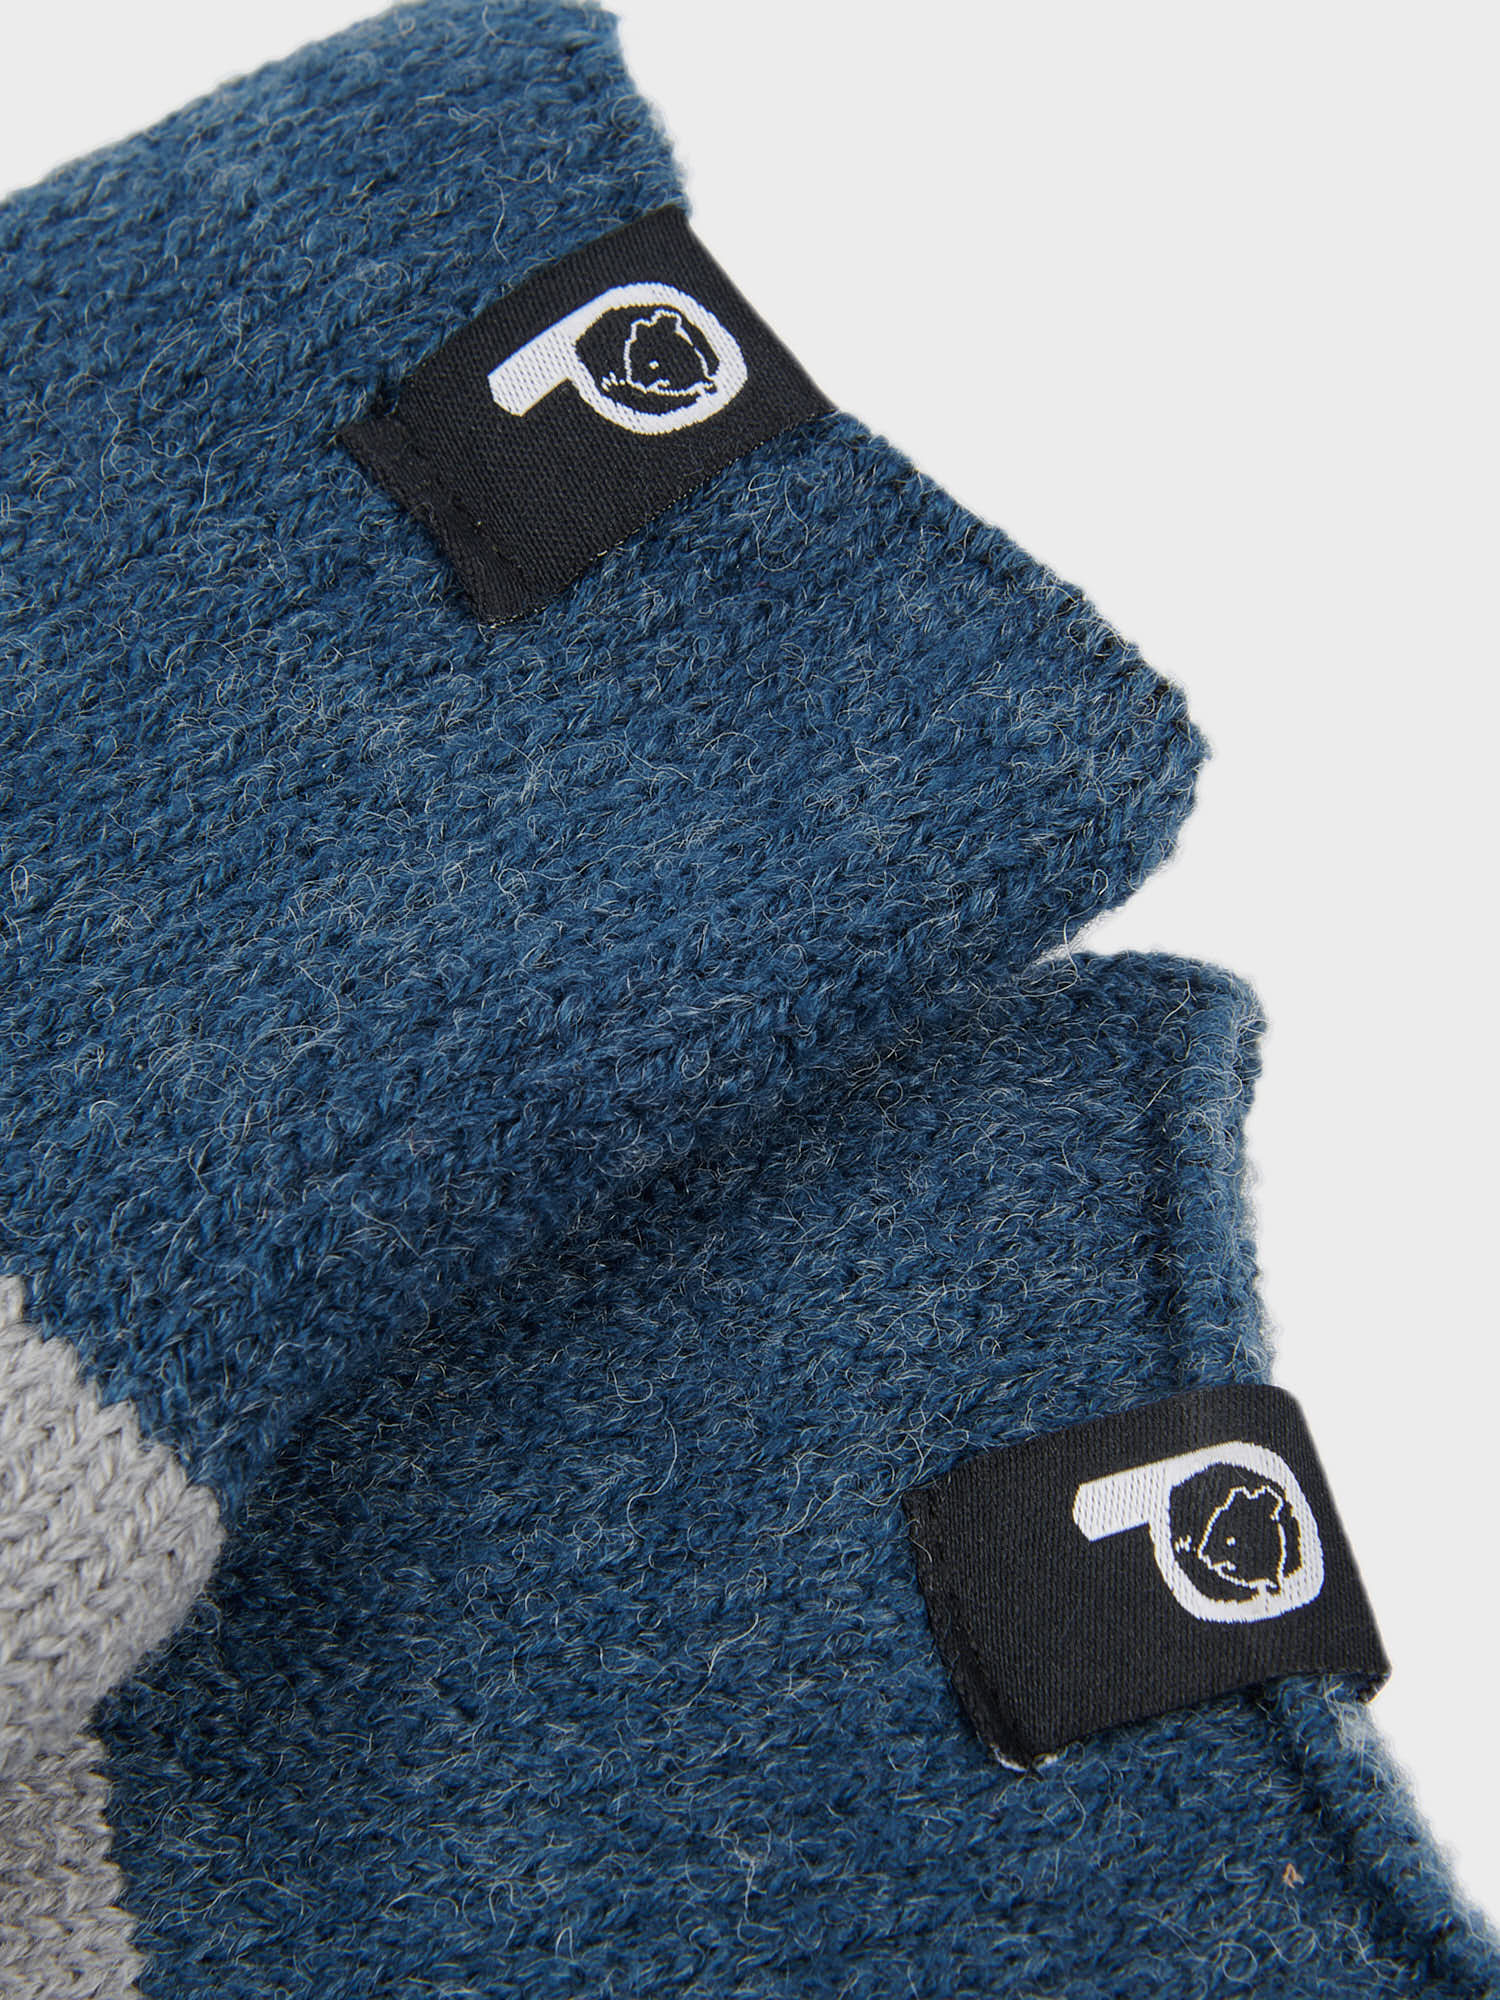 Geo Jacquard Wool Blend Socks in Vintage Grey Heather